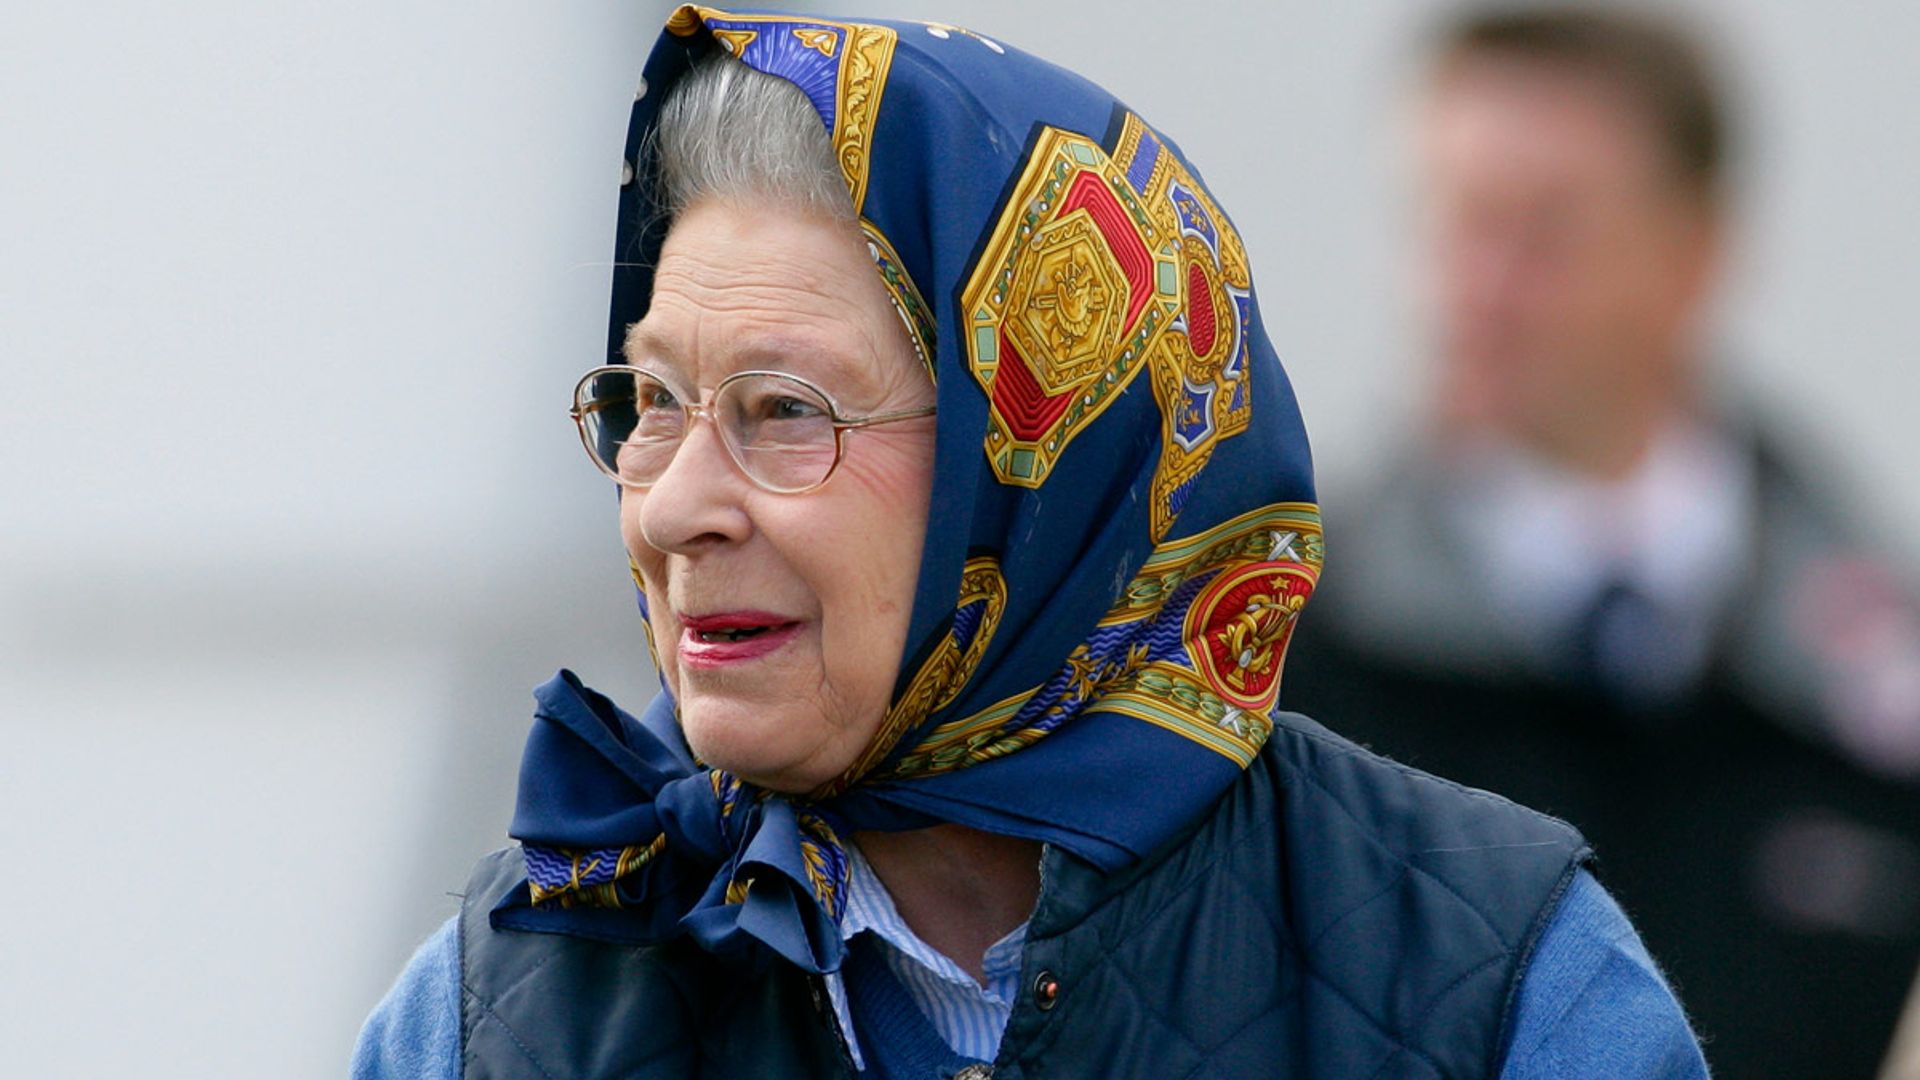 Queen Elizabeth II's rarely seen side revealed following death | HELLO!